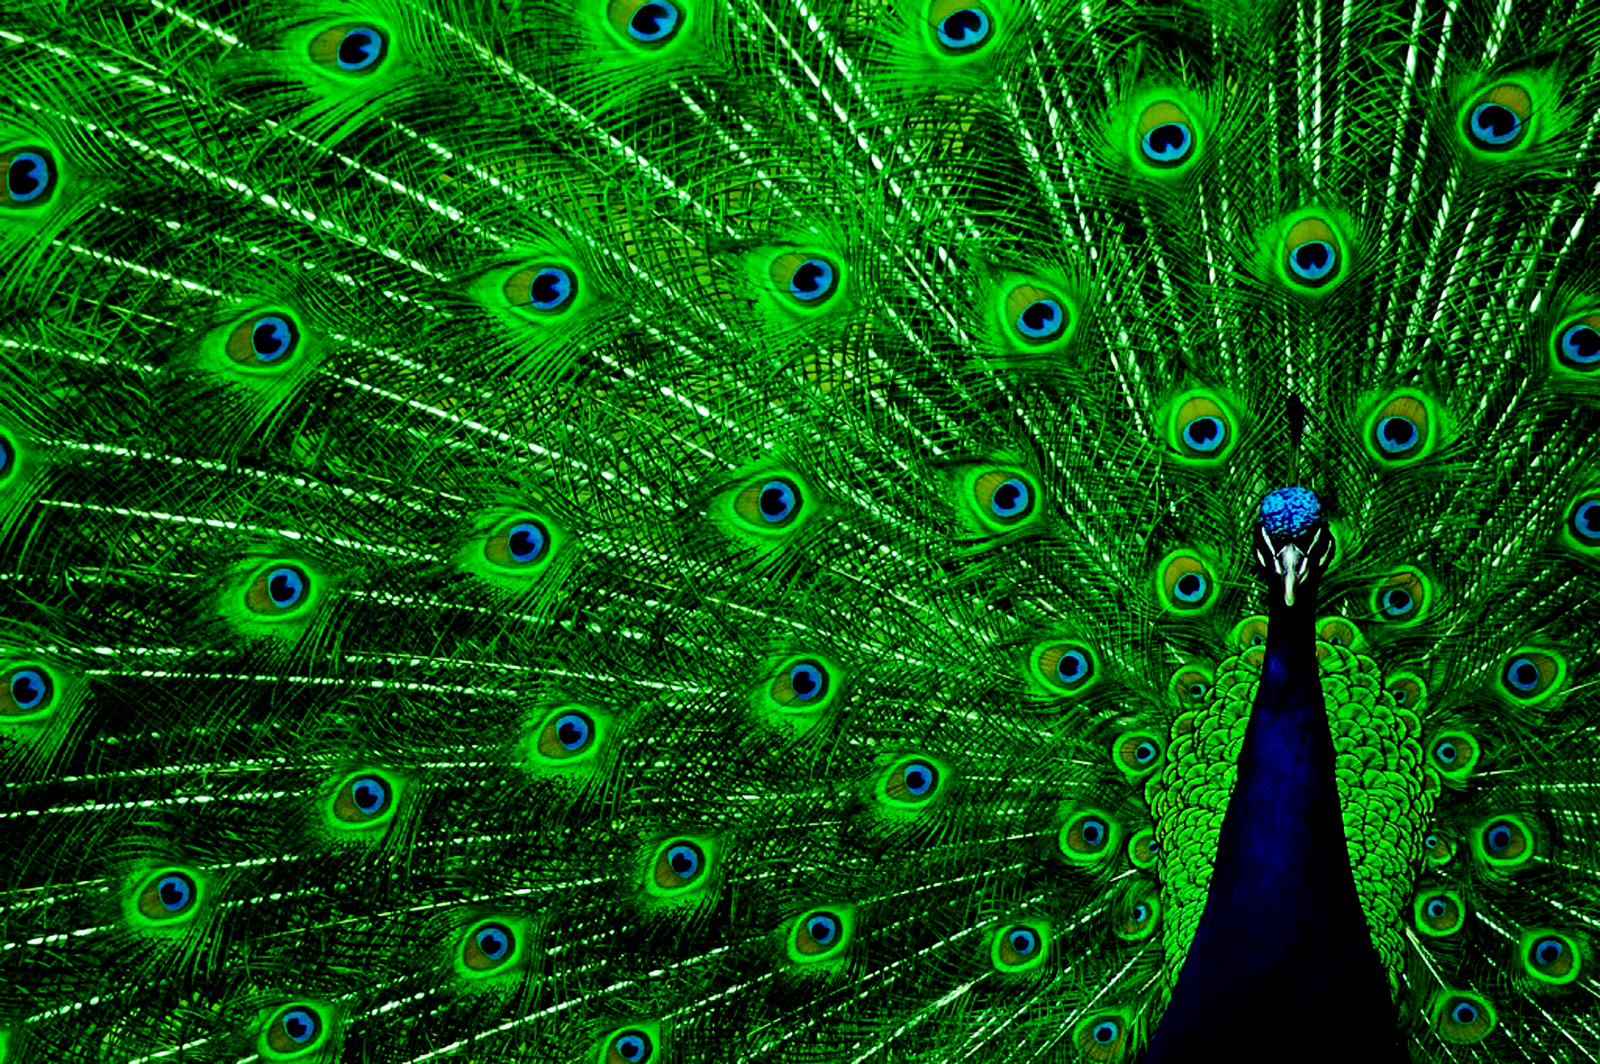 Peacock HD Wallpaper In For Your Desktop